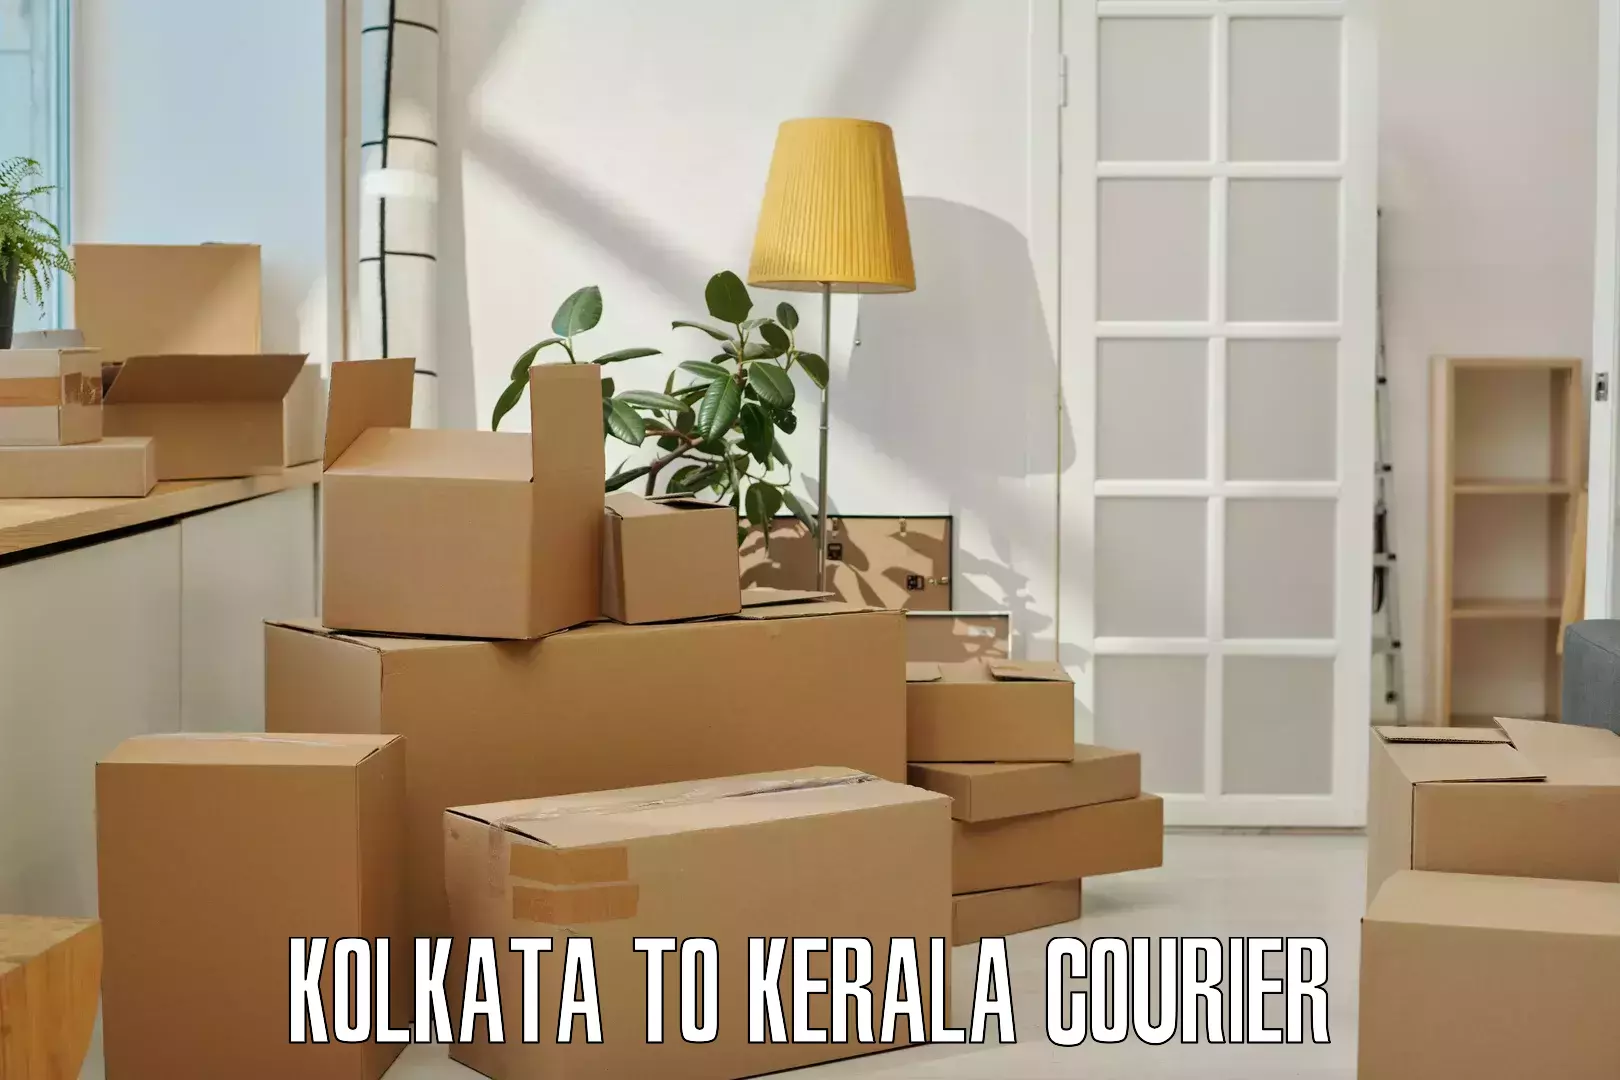 Efficient freight service Kolkata to Kerala